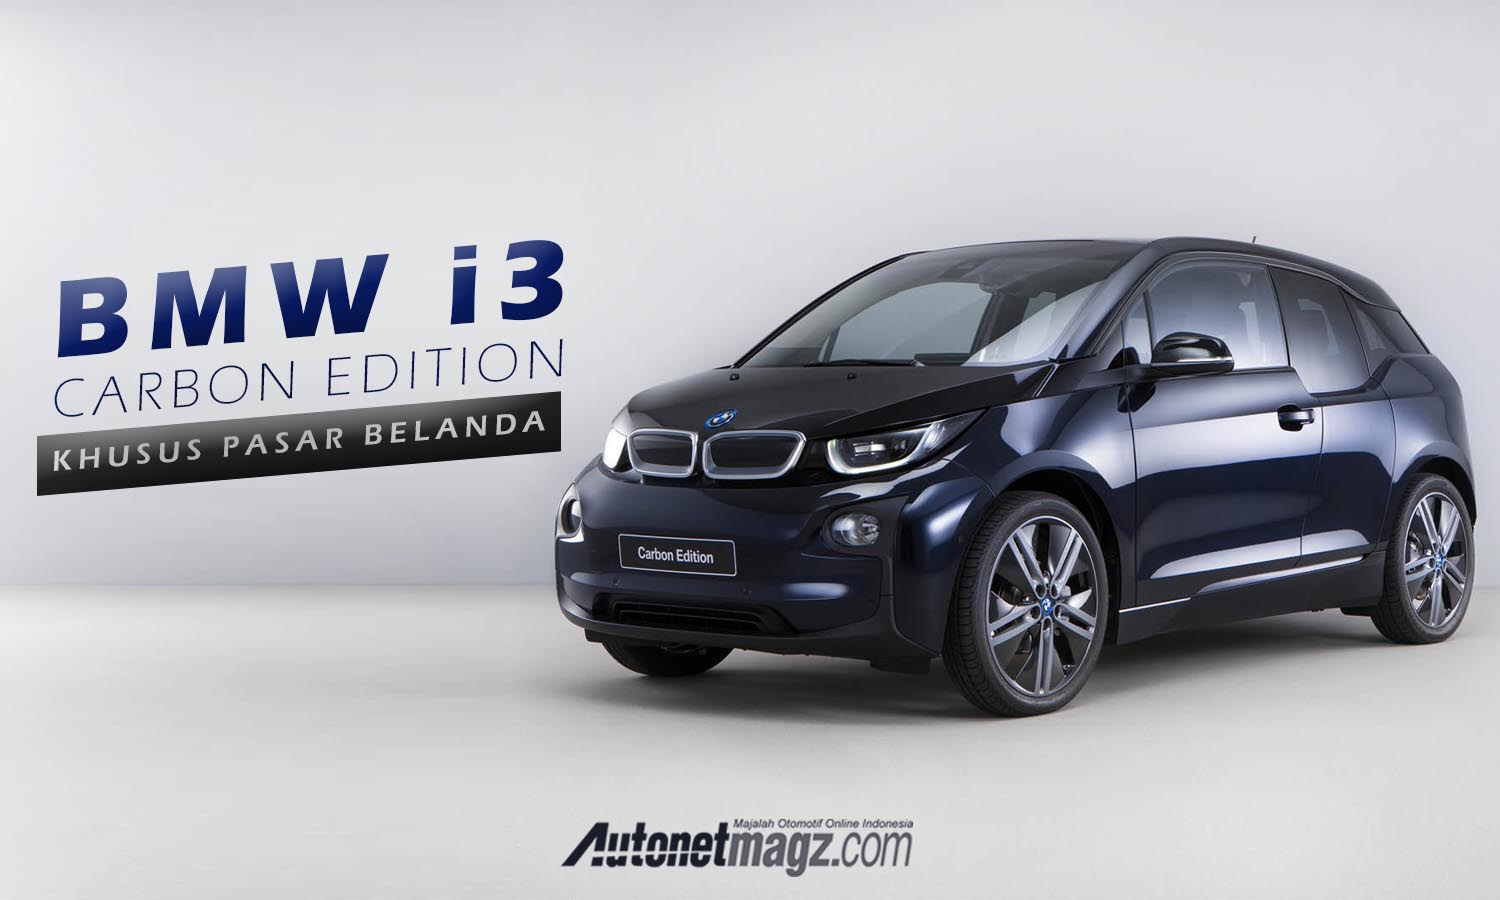 Berita, banner i3: BMW Perkenalkan BMW i3 Carbon Edition, Khusus Pasar Belanda